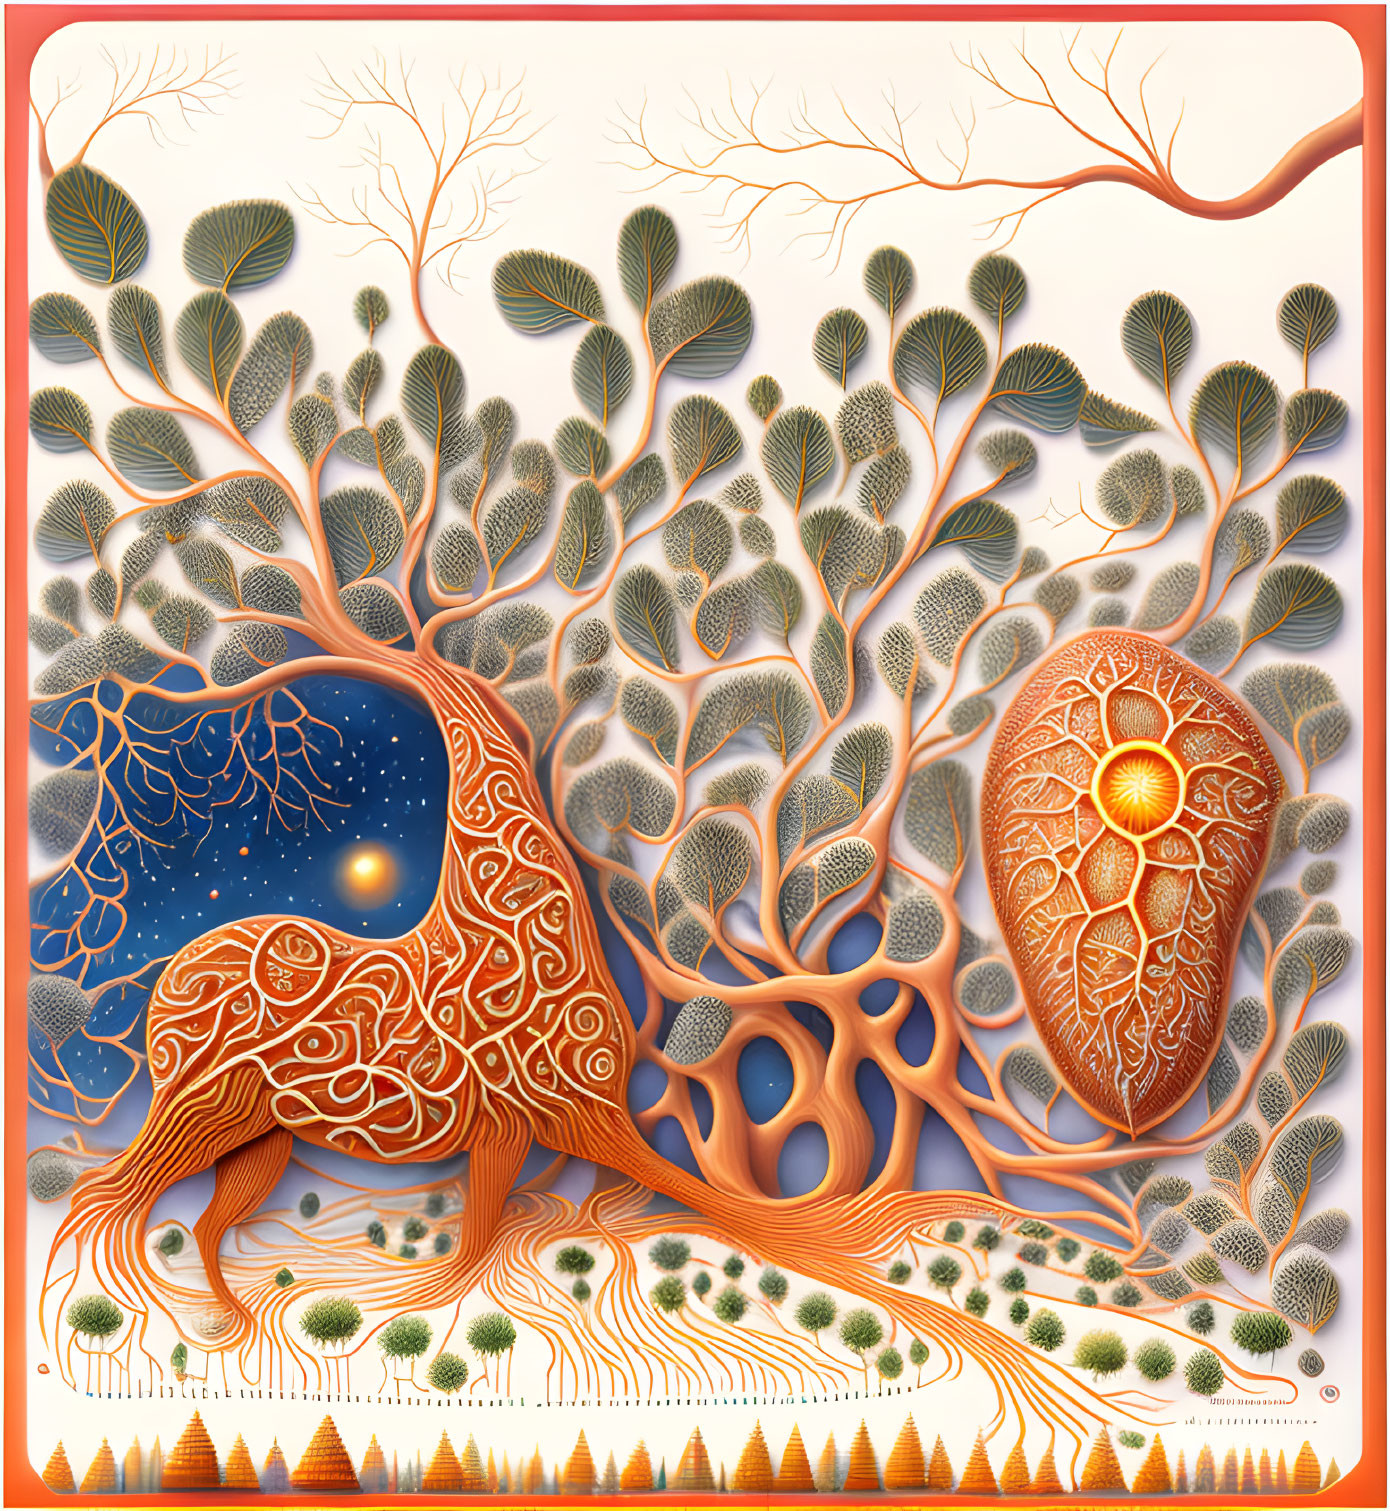 Detailed Stylized Tree Illustration with Vibrant Orange Hue